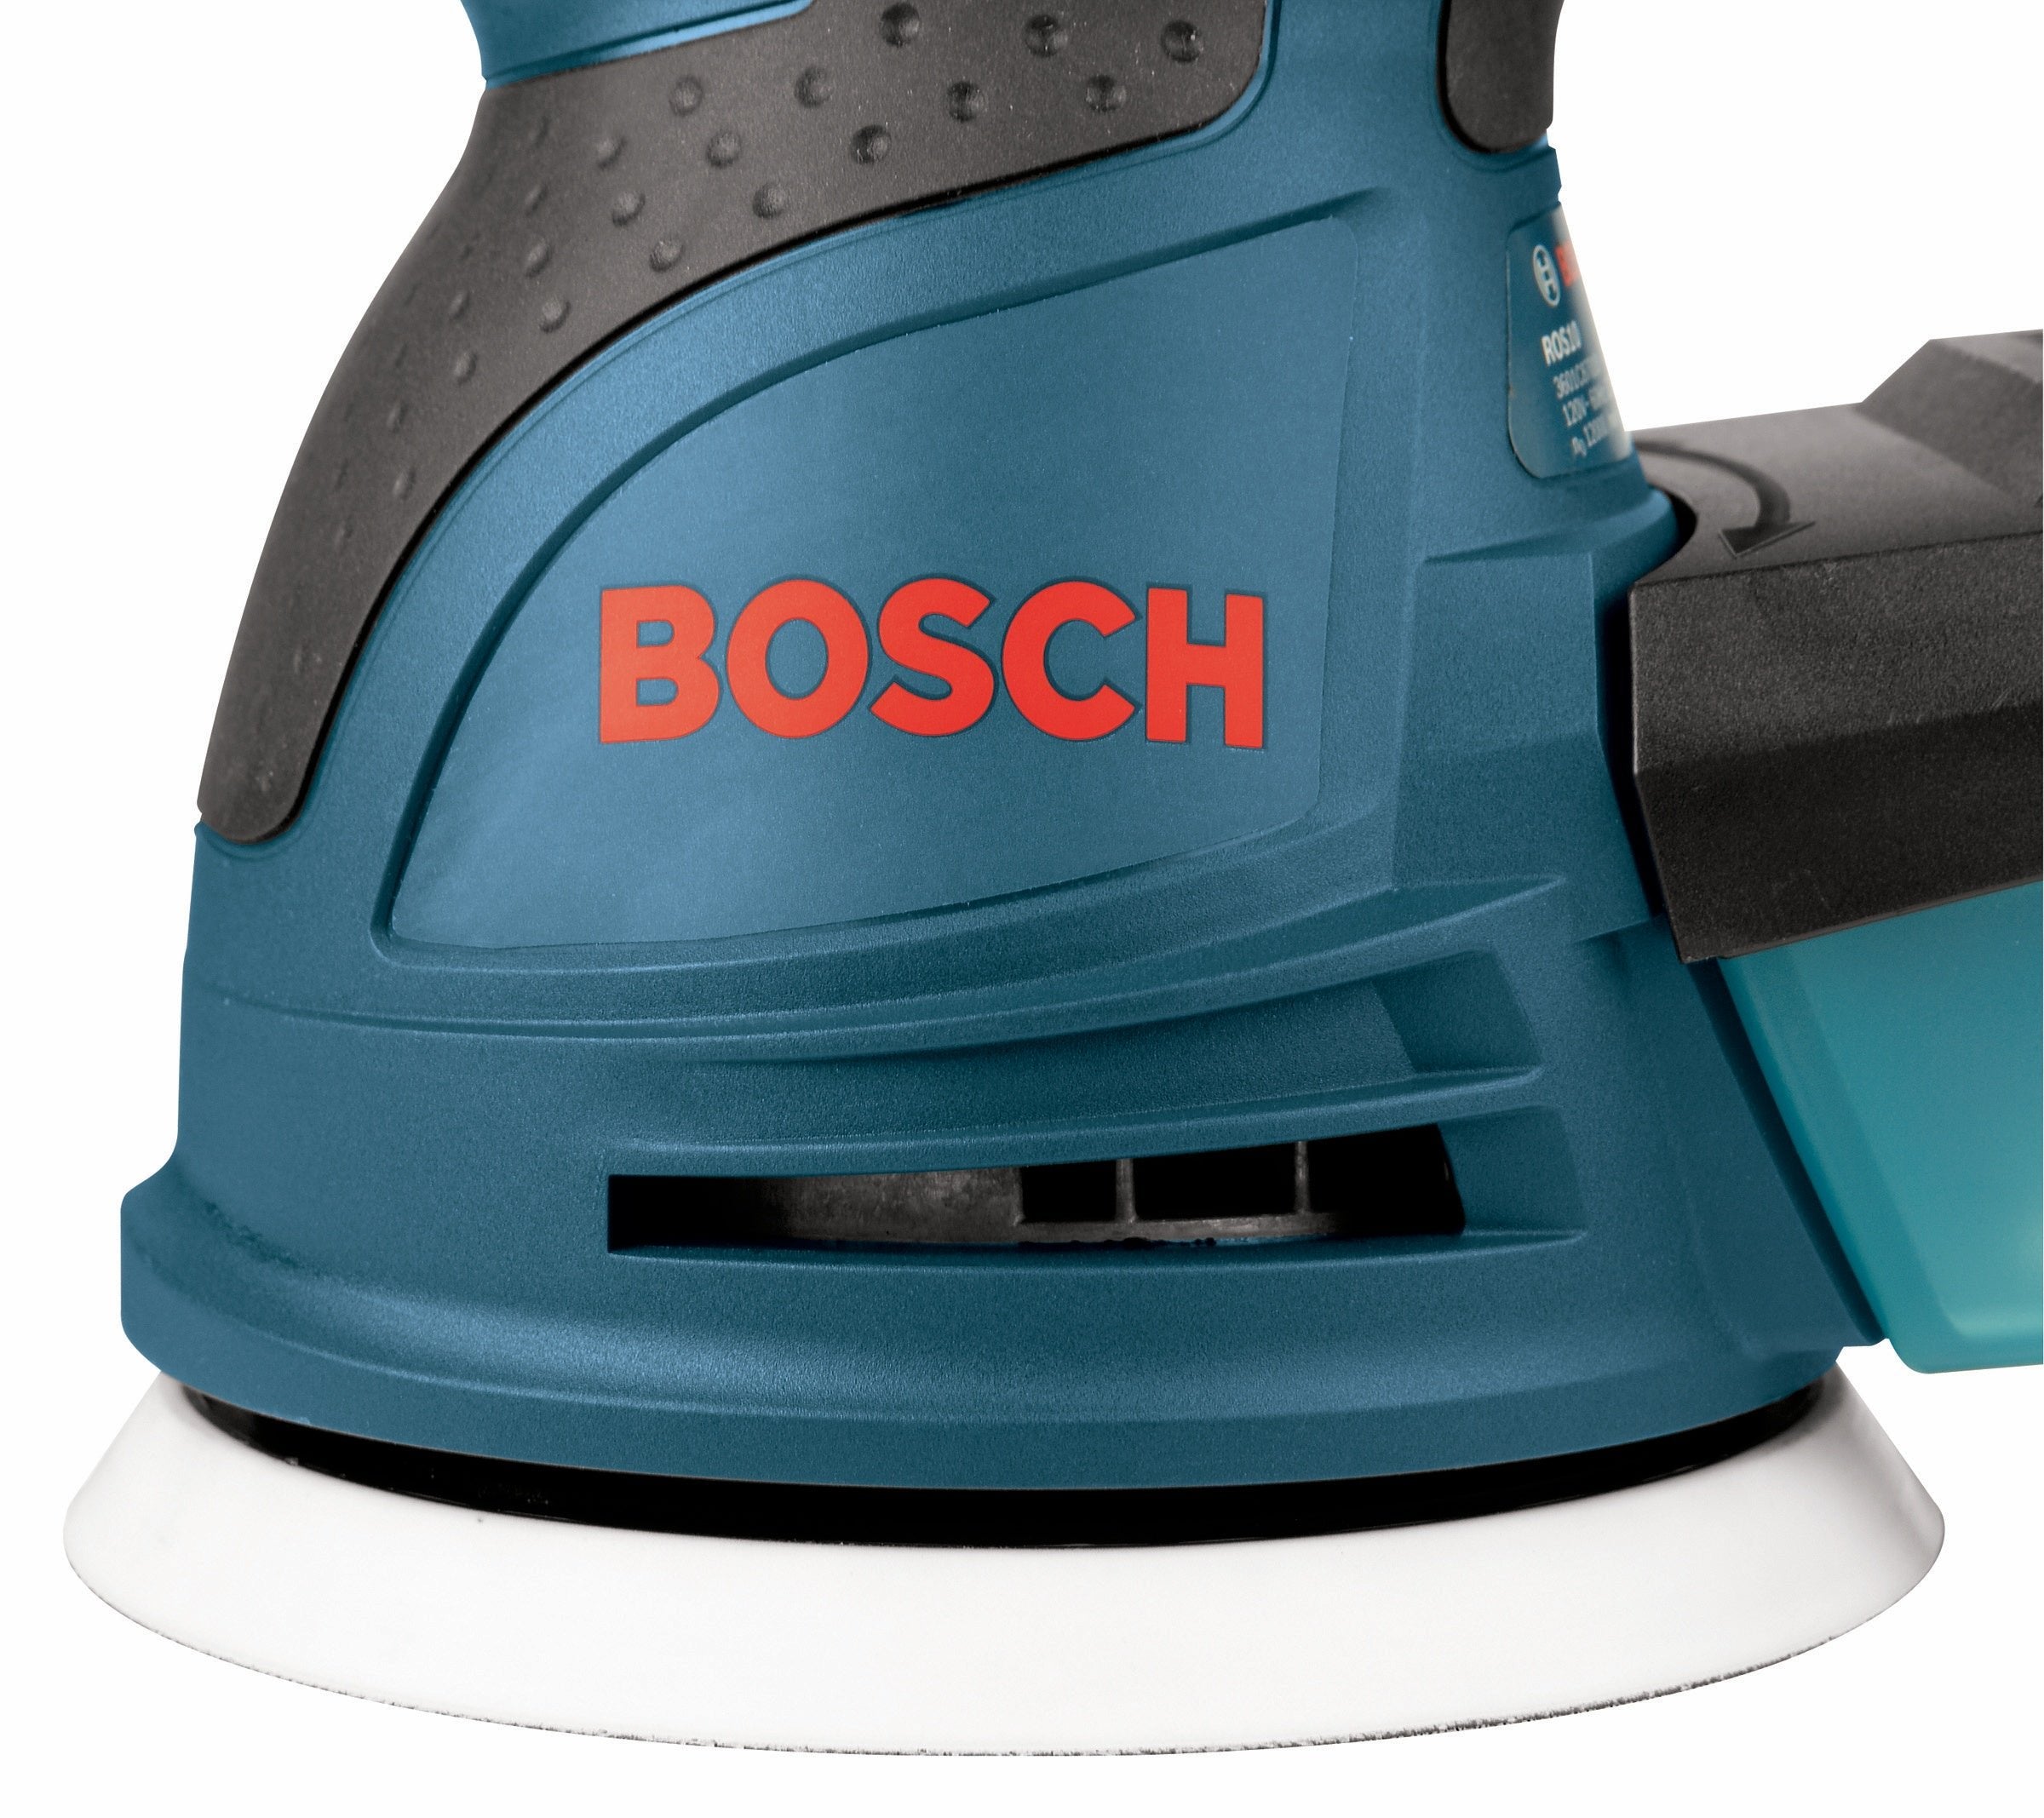 Bosch ROS20VSC - 5" Random Orbit Variable Speed Palm Sander